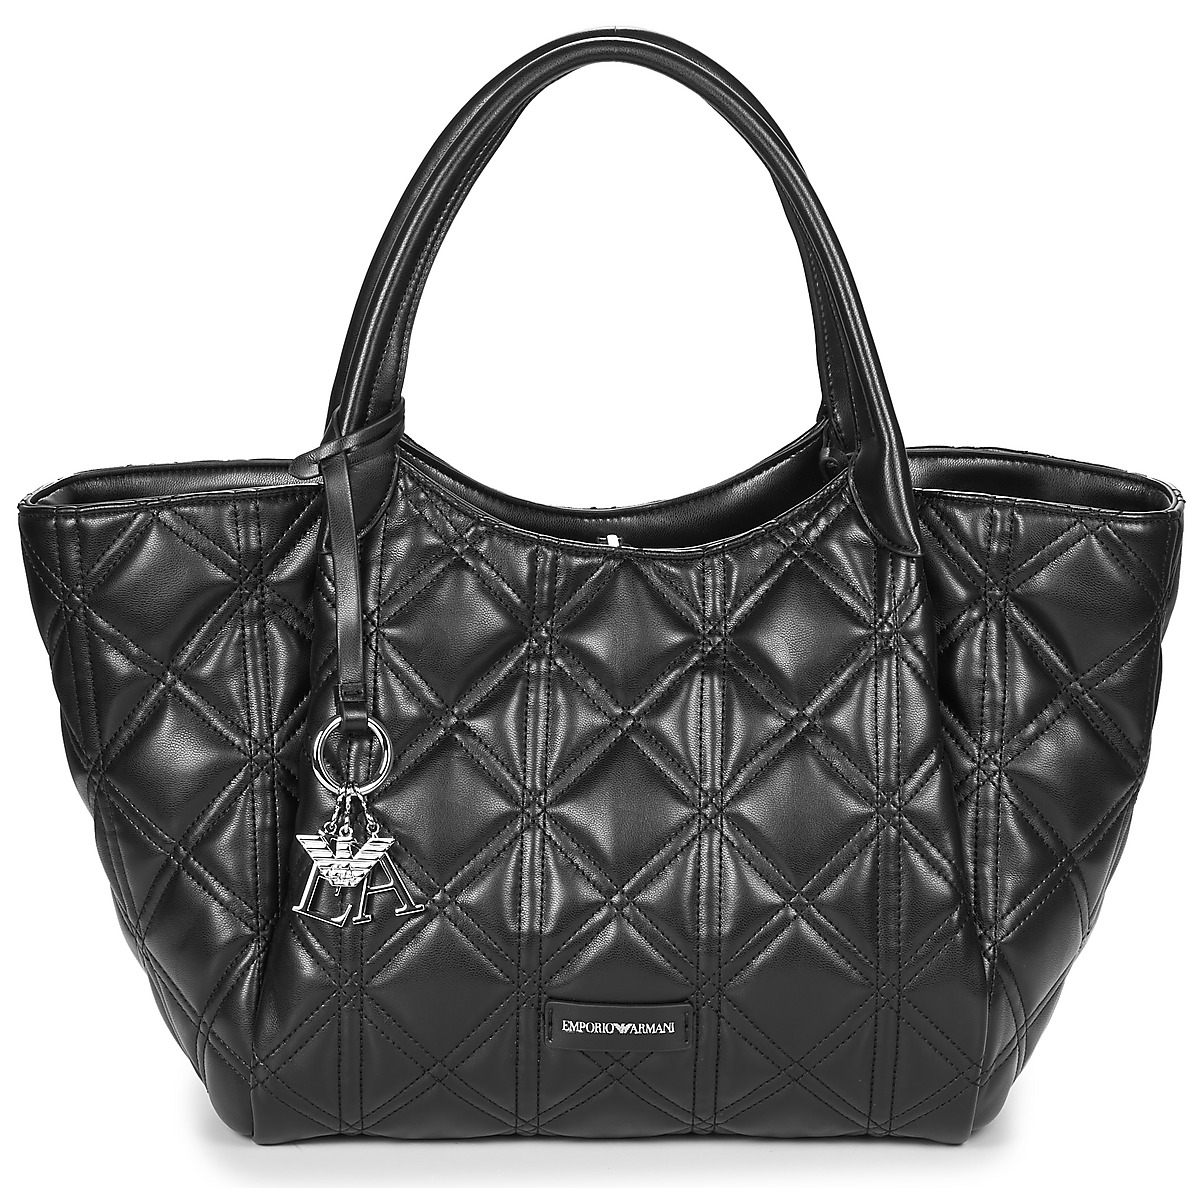 Emporio Armani  Shopping bag Emporio Armani WOMEN'S SHOPPING BAG